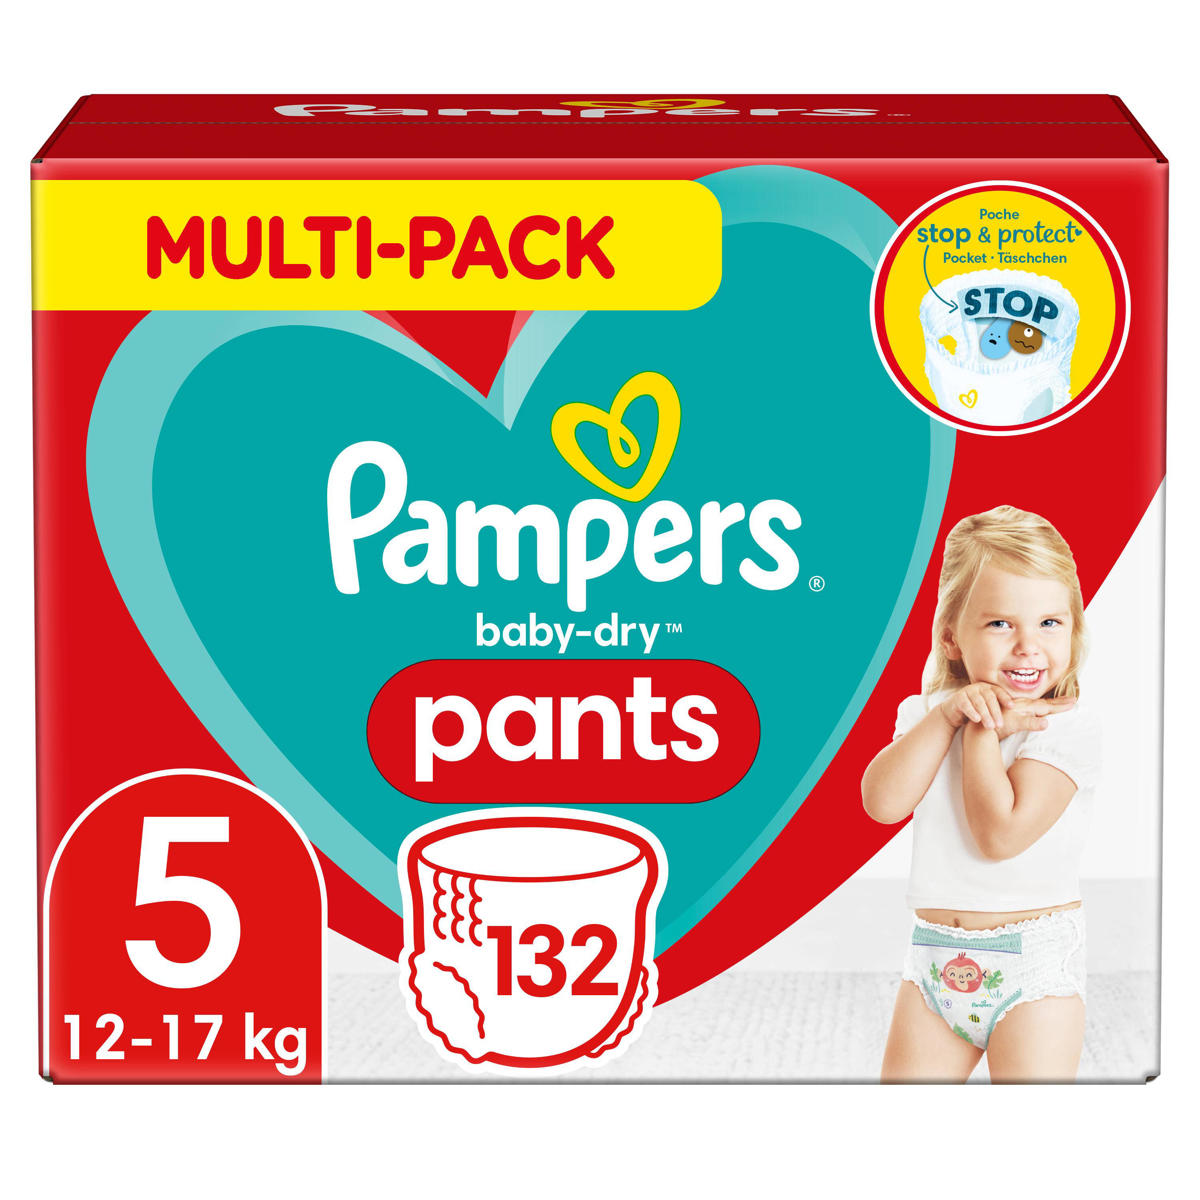 Pampers Baby-Dry Pants Luierbroekjes - Maat 5 (12-17 kg) - 132 stuks - Multi-Pack wehkamp